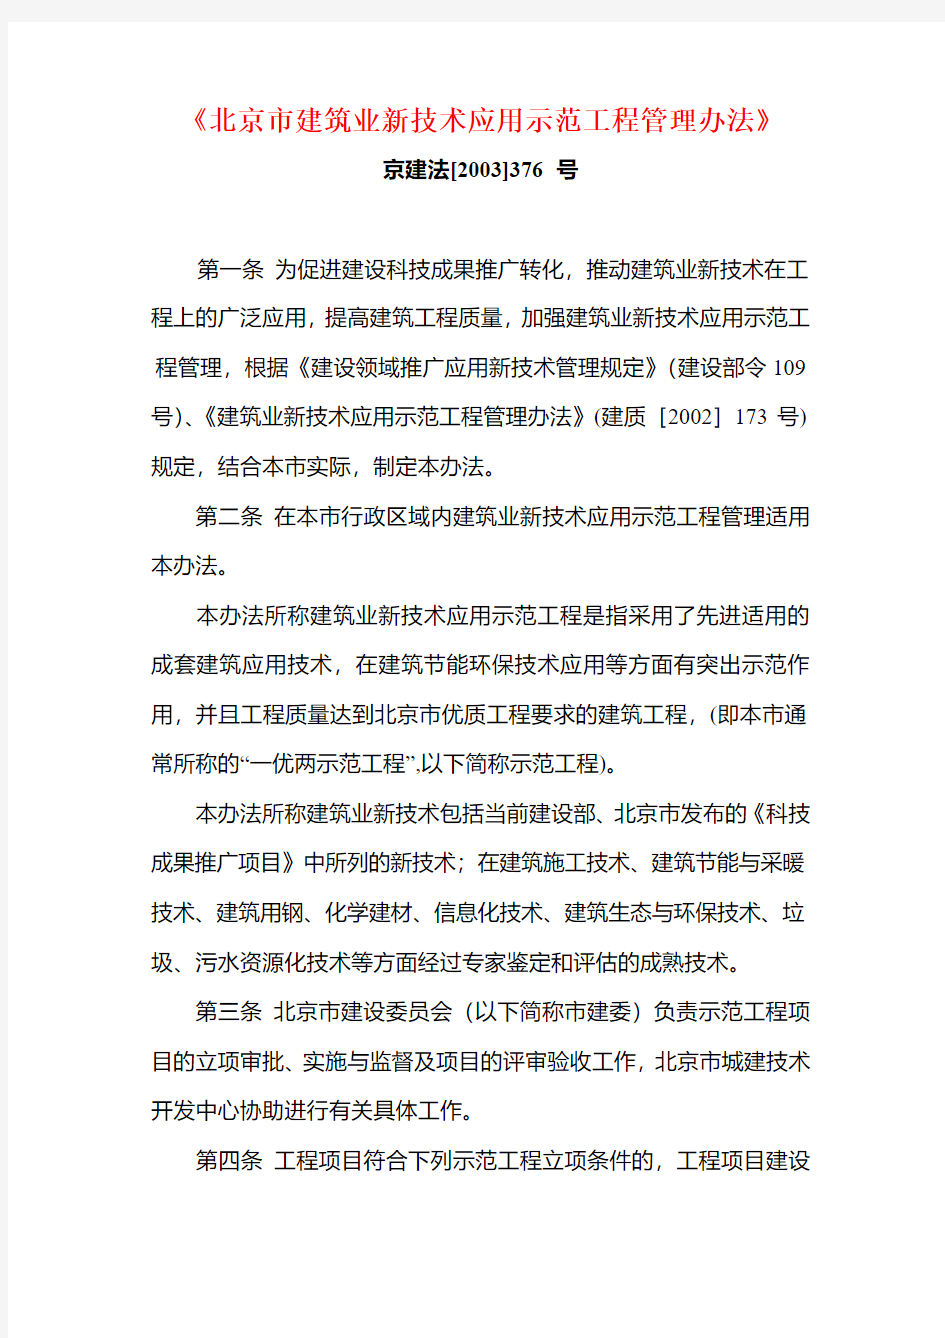 7  (新技术应用管理办法)北京市建筑业新技术应用示范工程管理办法